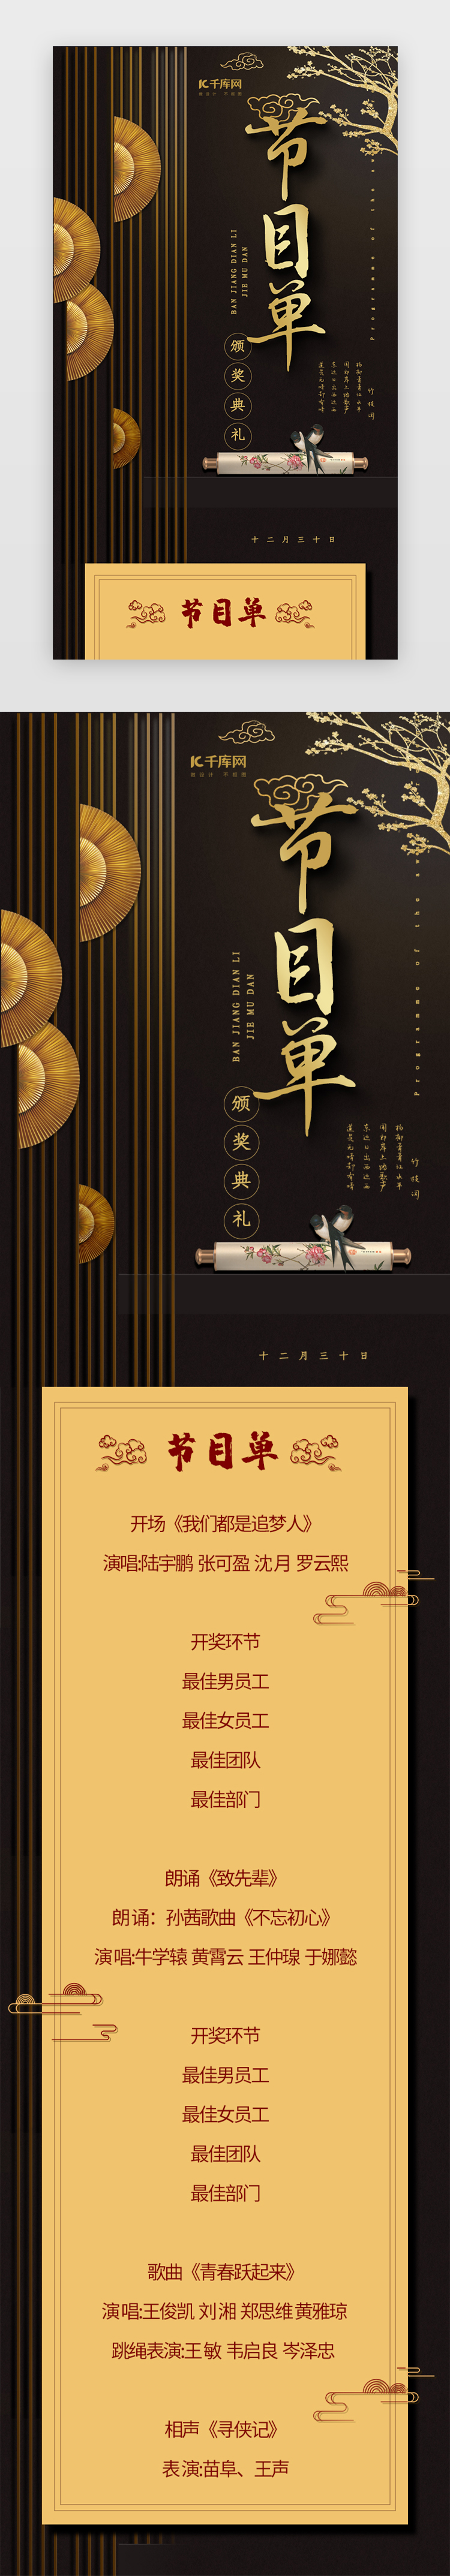 黑色中国风颁奖典礼节目单h5图片